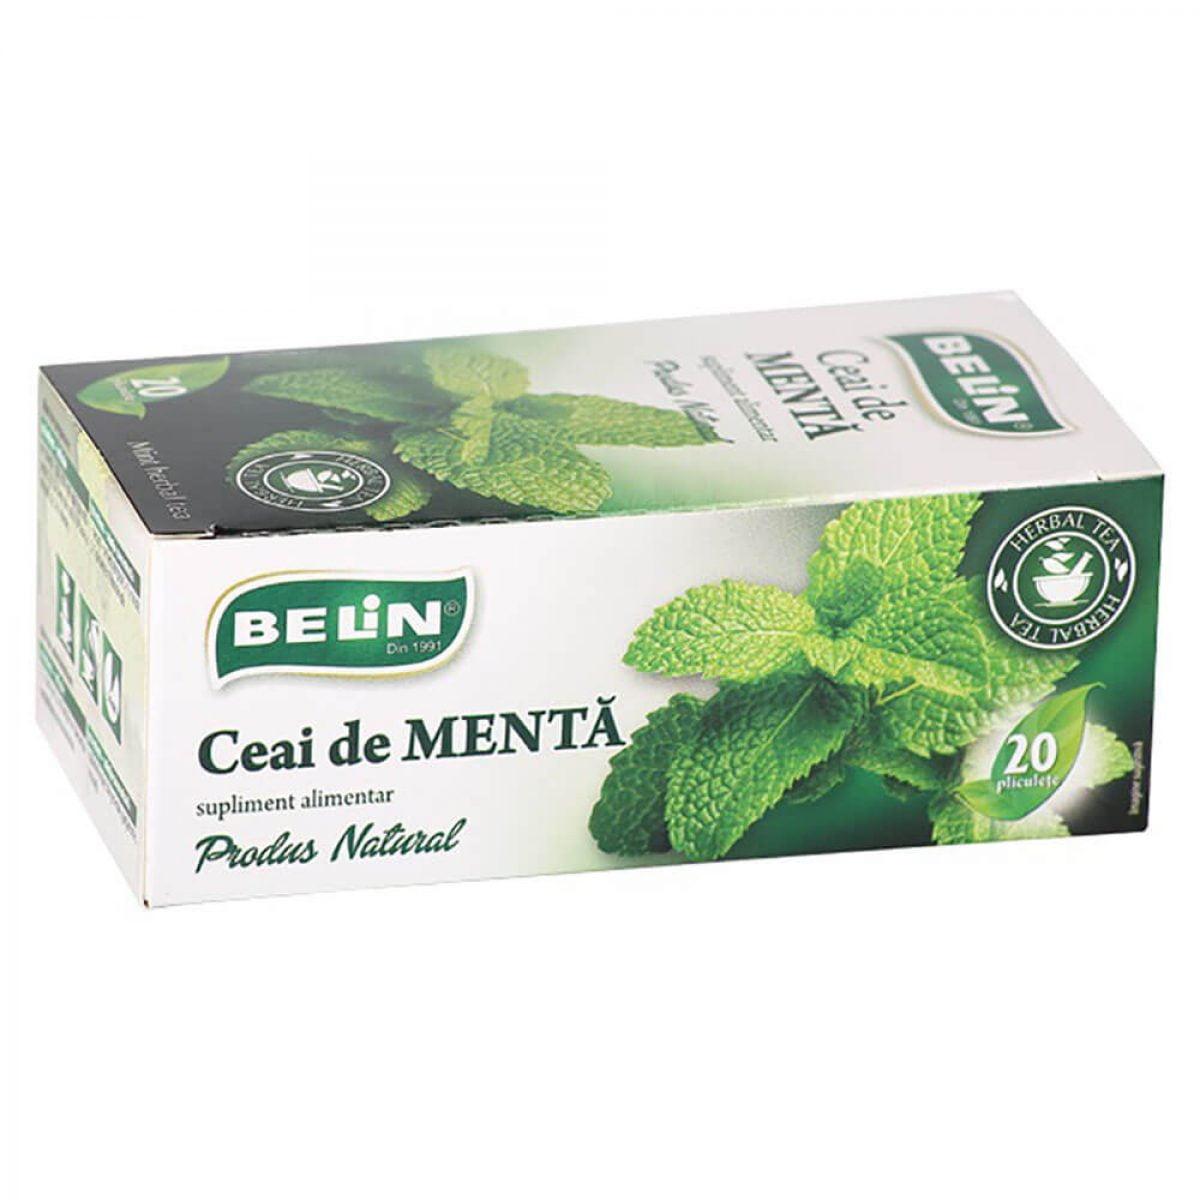 Ceai BELIN menta, 20 plicuri/cutie, 2 buc/set